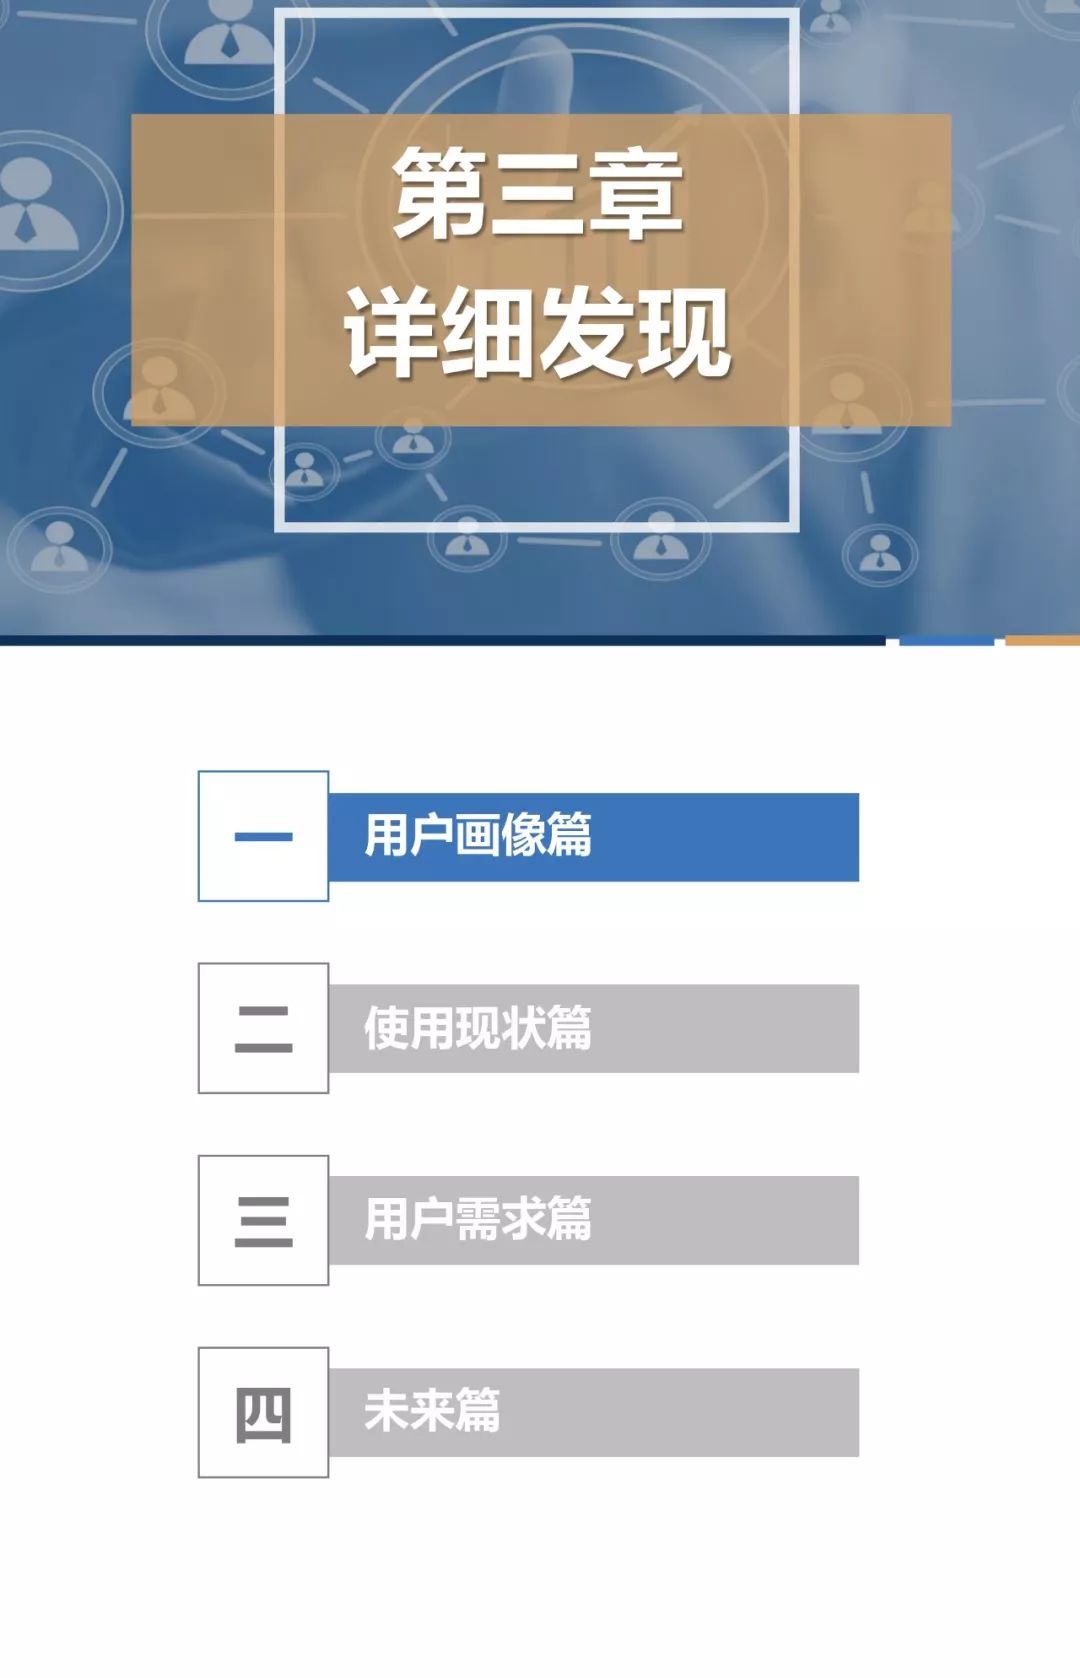 2018中国移动银行用户调研报告